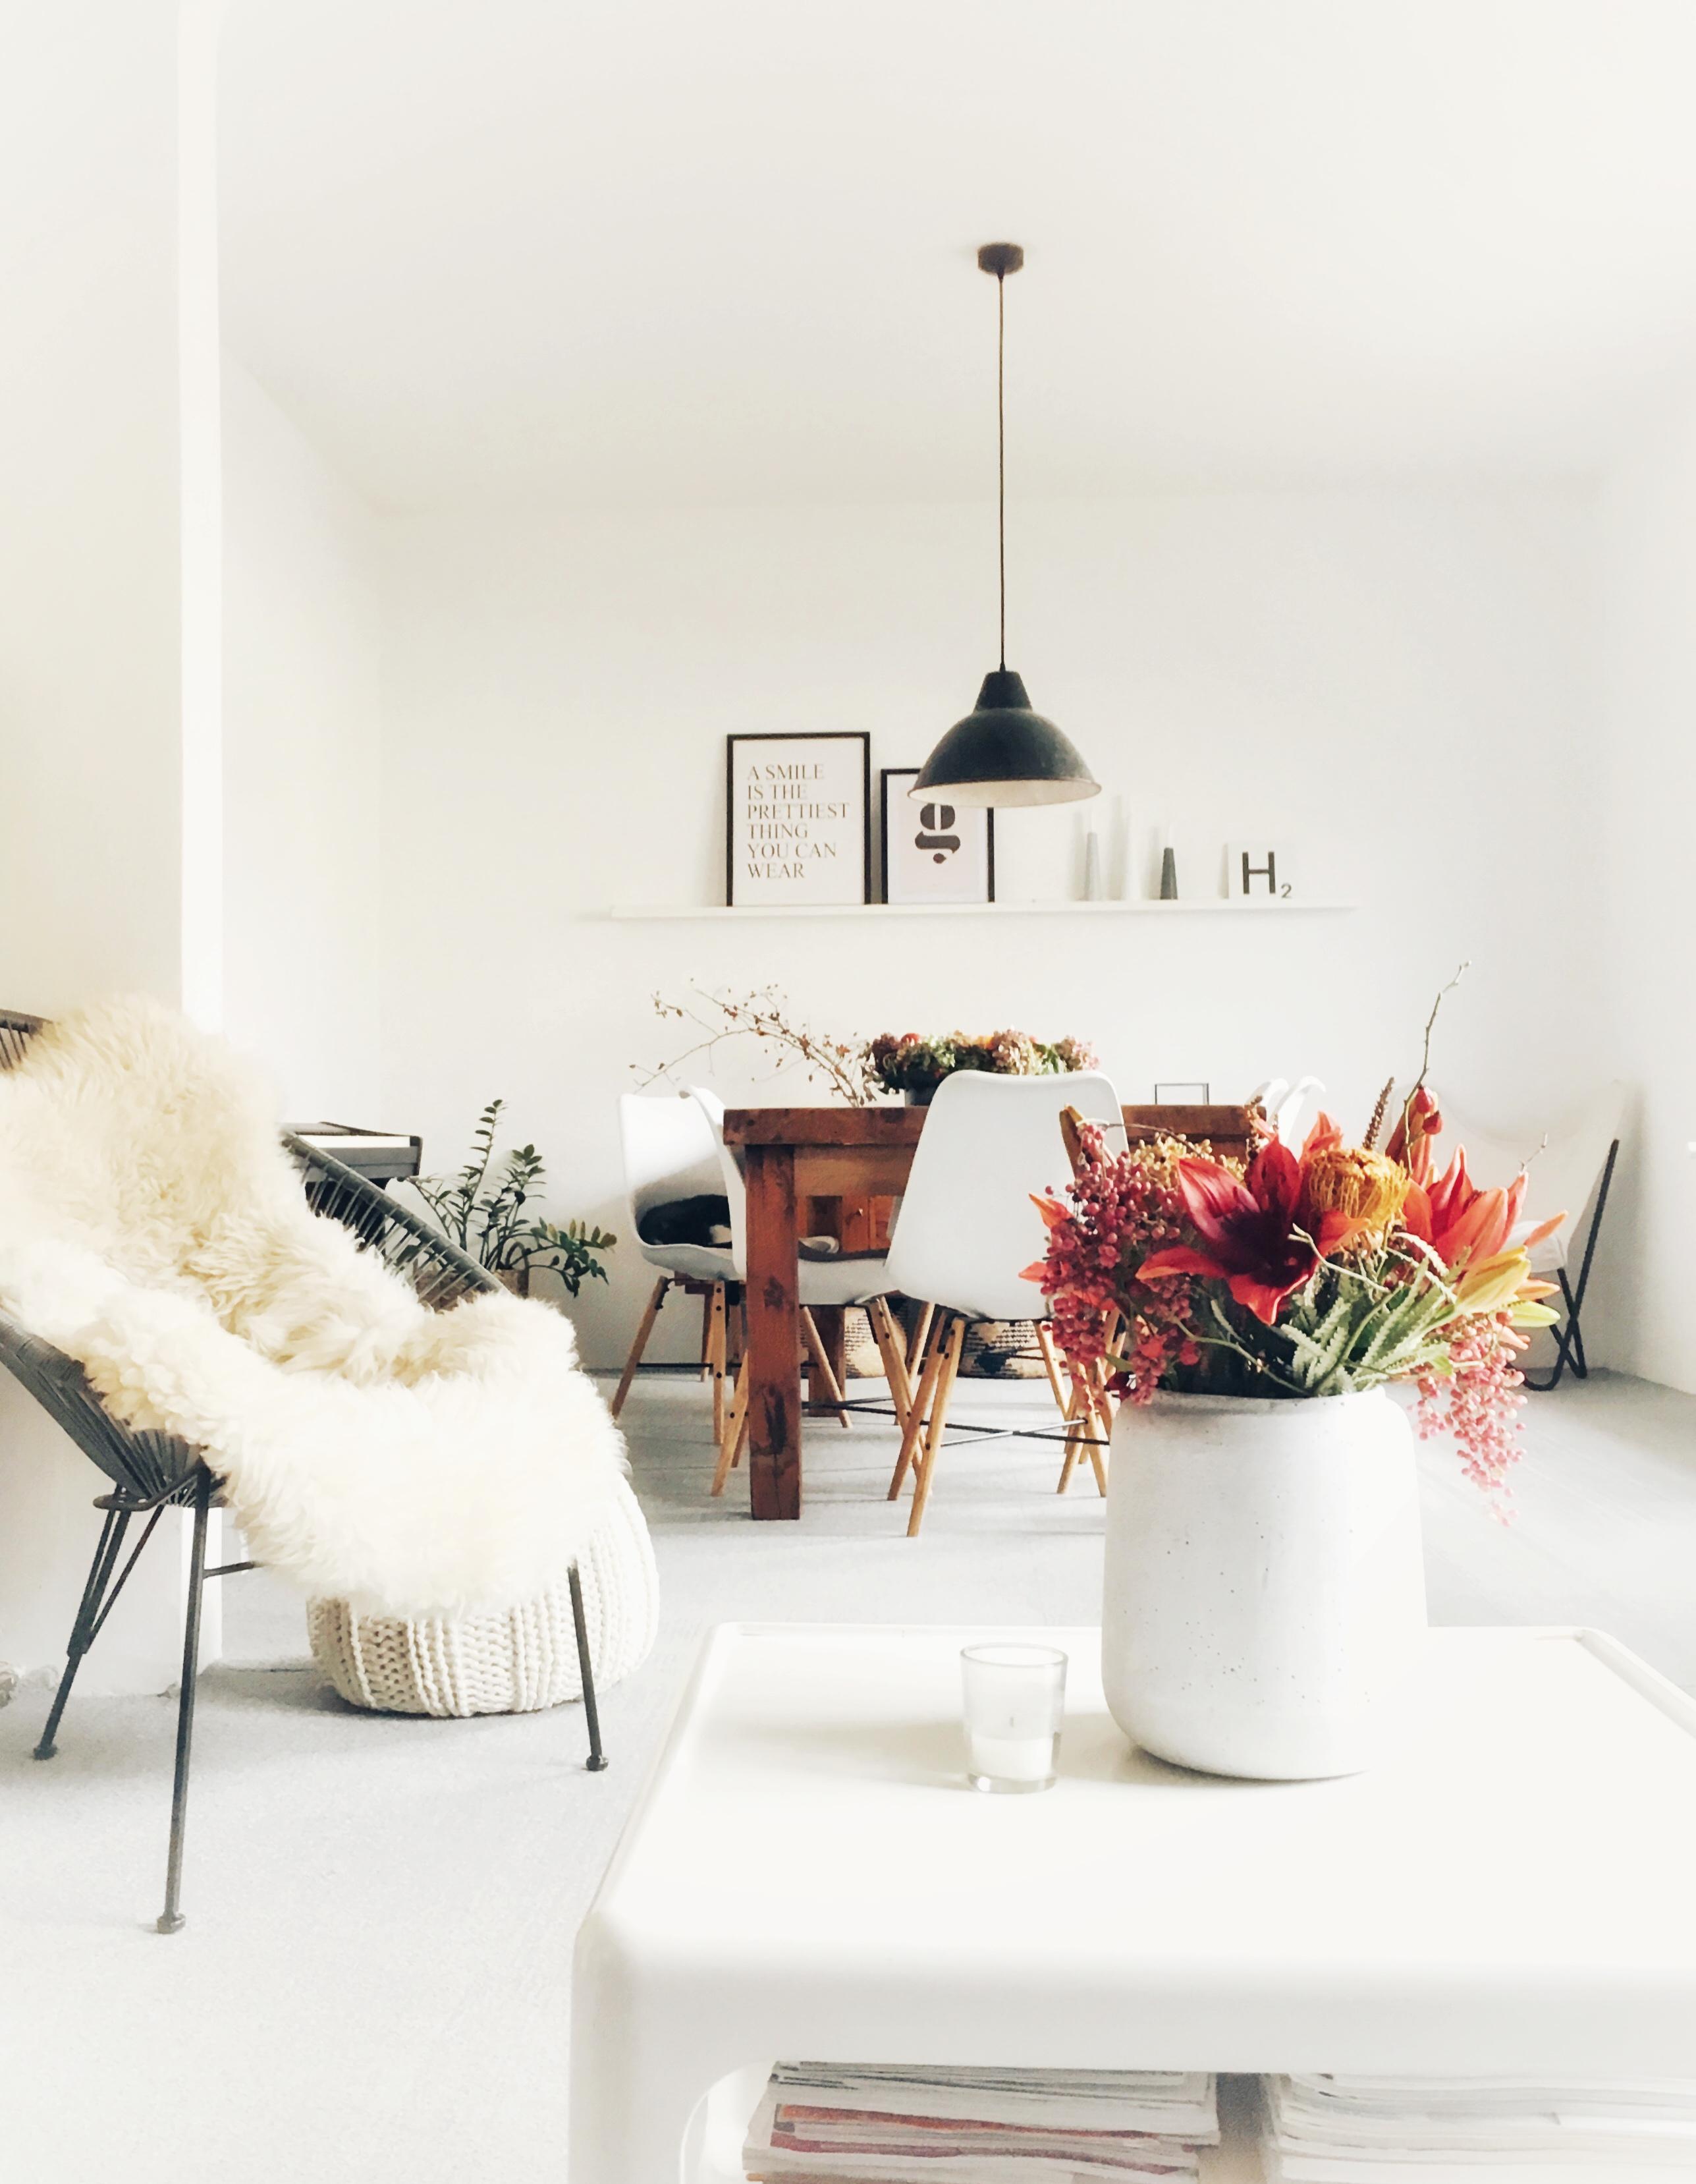 Der Herbst ist auch in unser #wohnzimmer eingezogen. #livingroom #solebich #scandihome #vintage #nordic